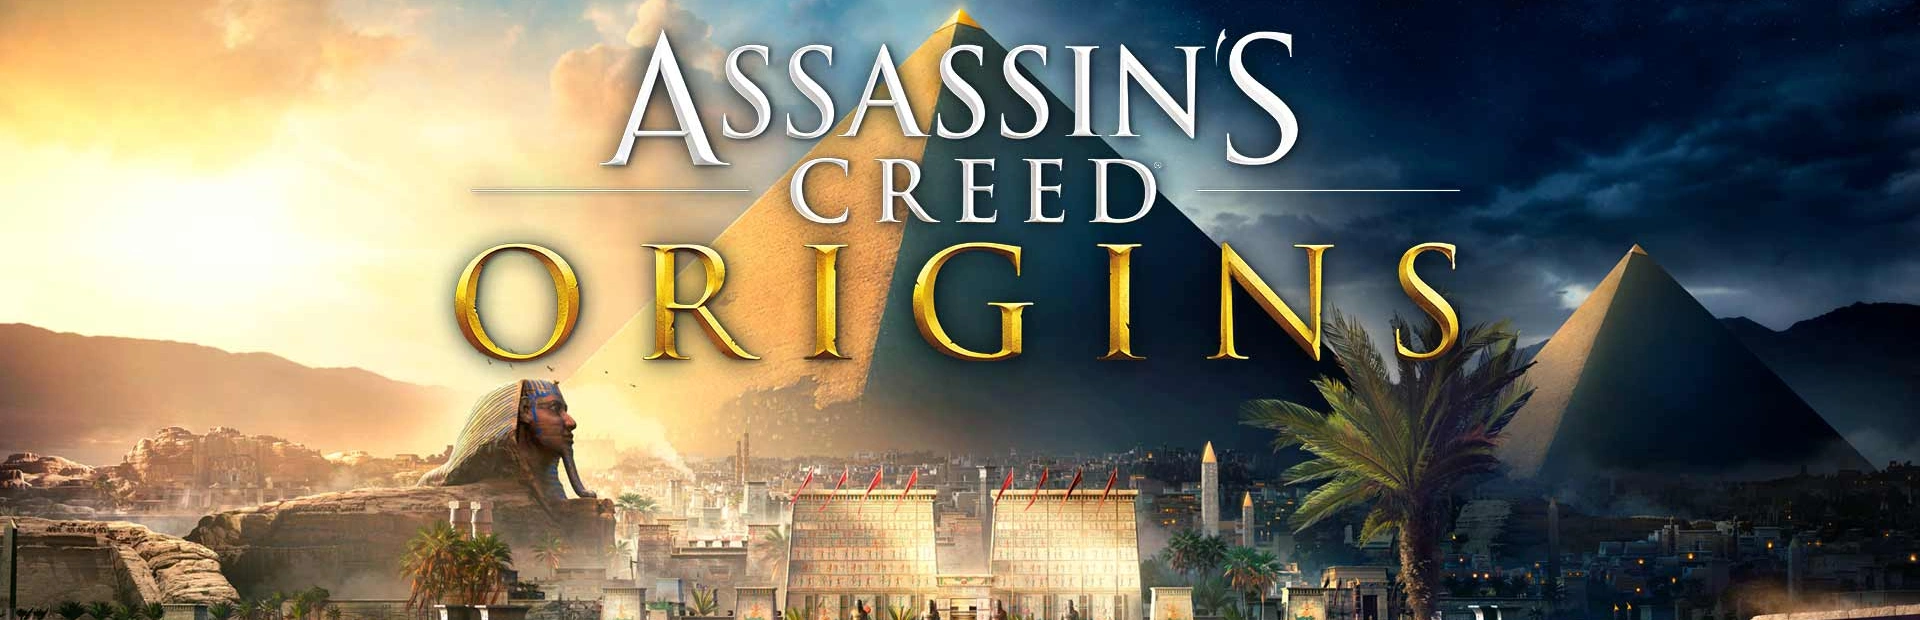 دانلود بازی Assassin's Creed Origins برای کامپیوتر | گیمباتو